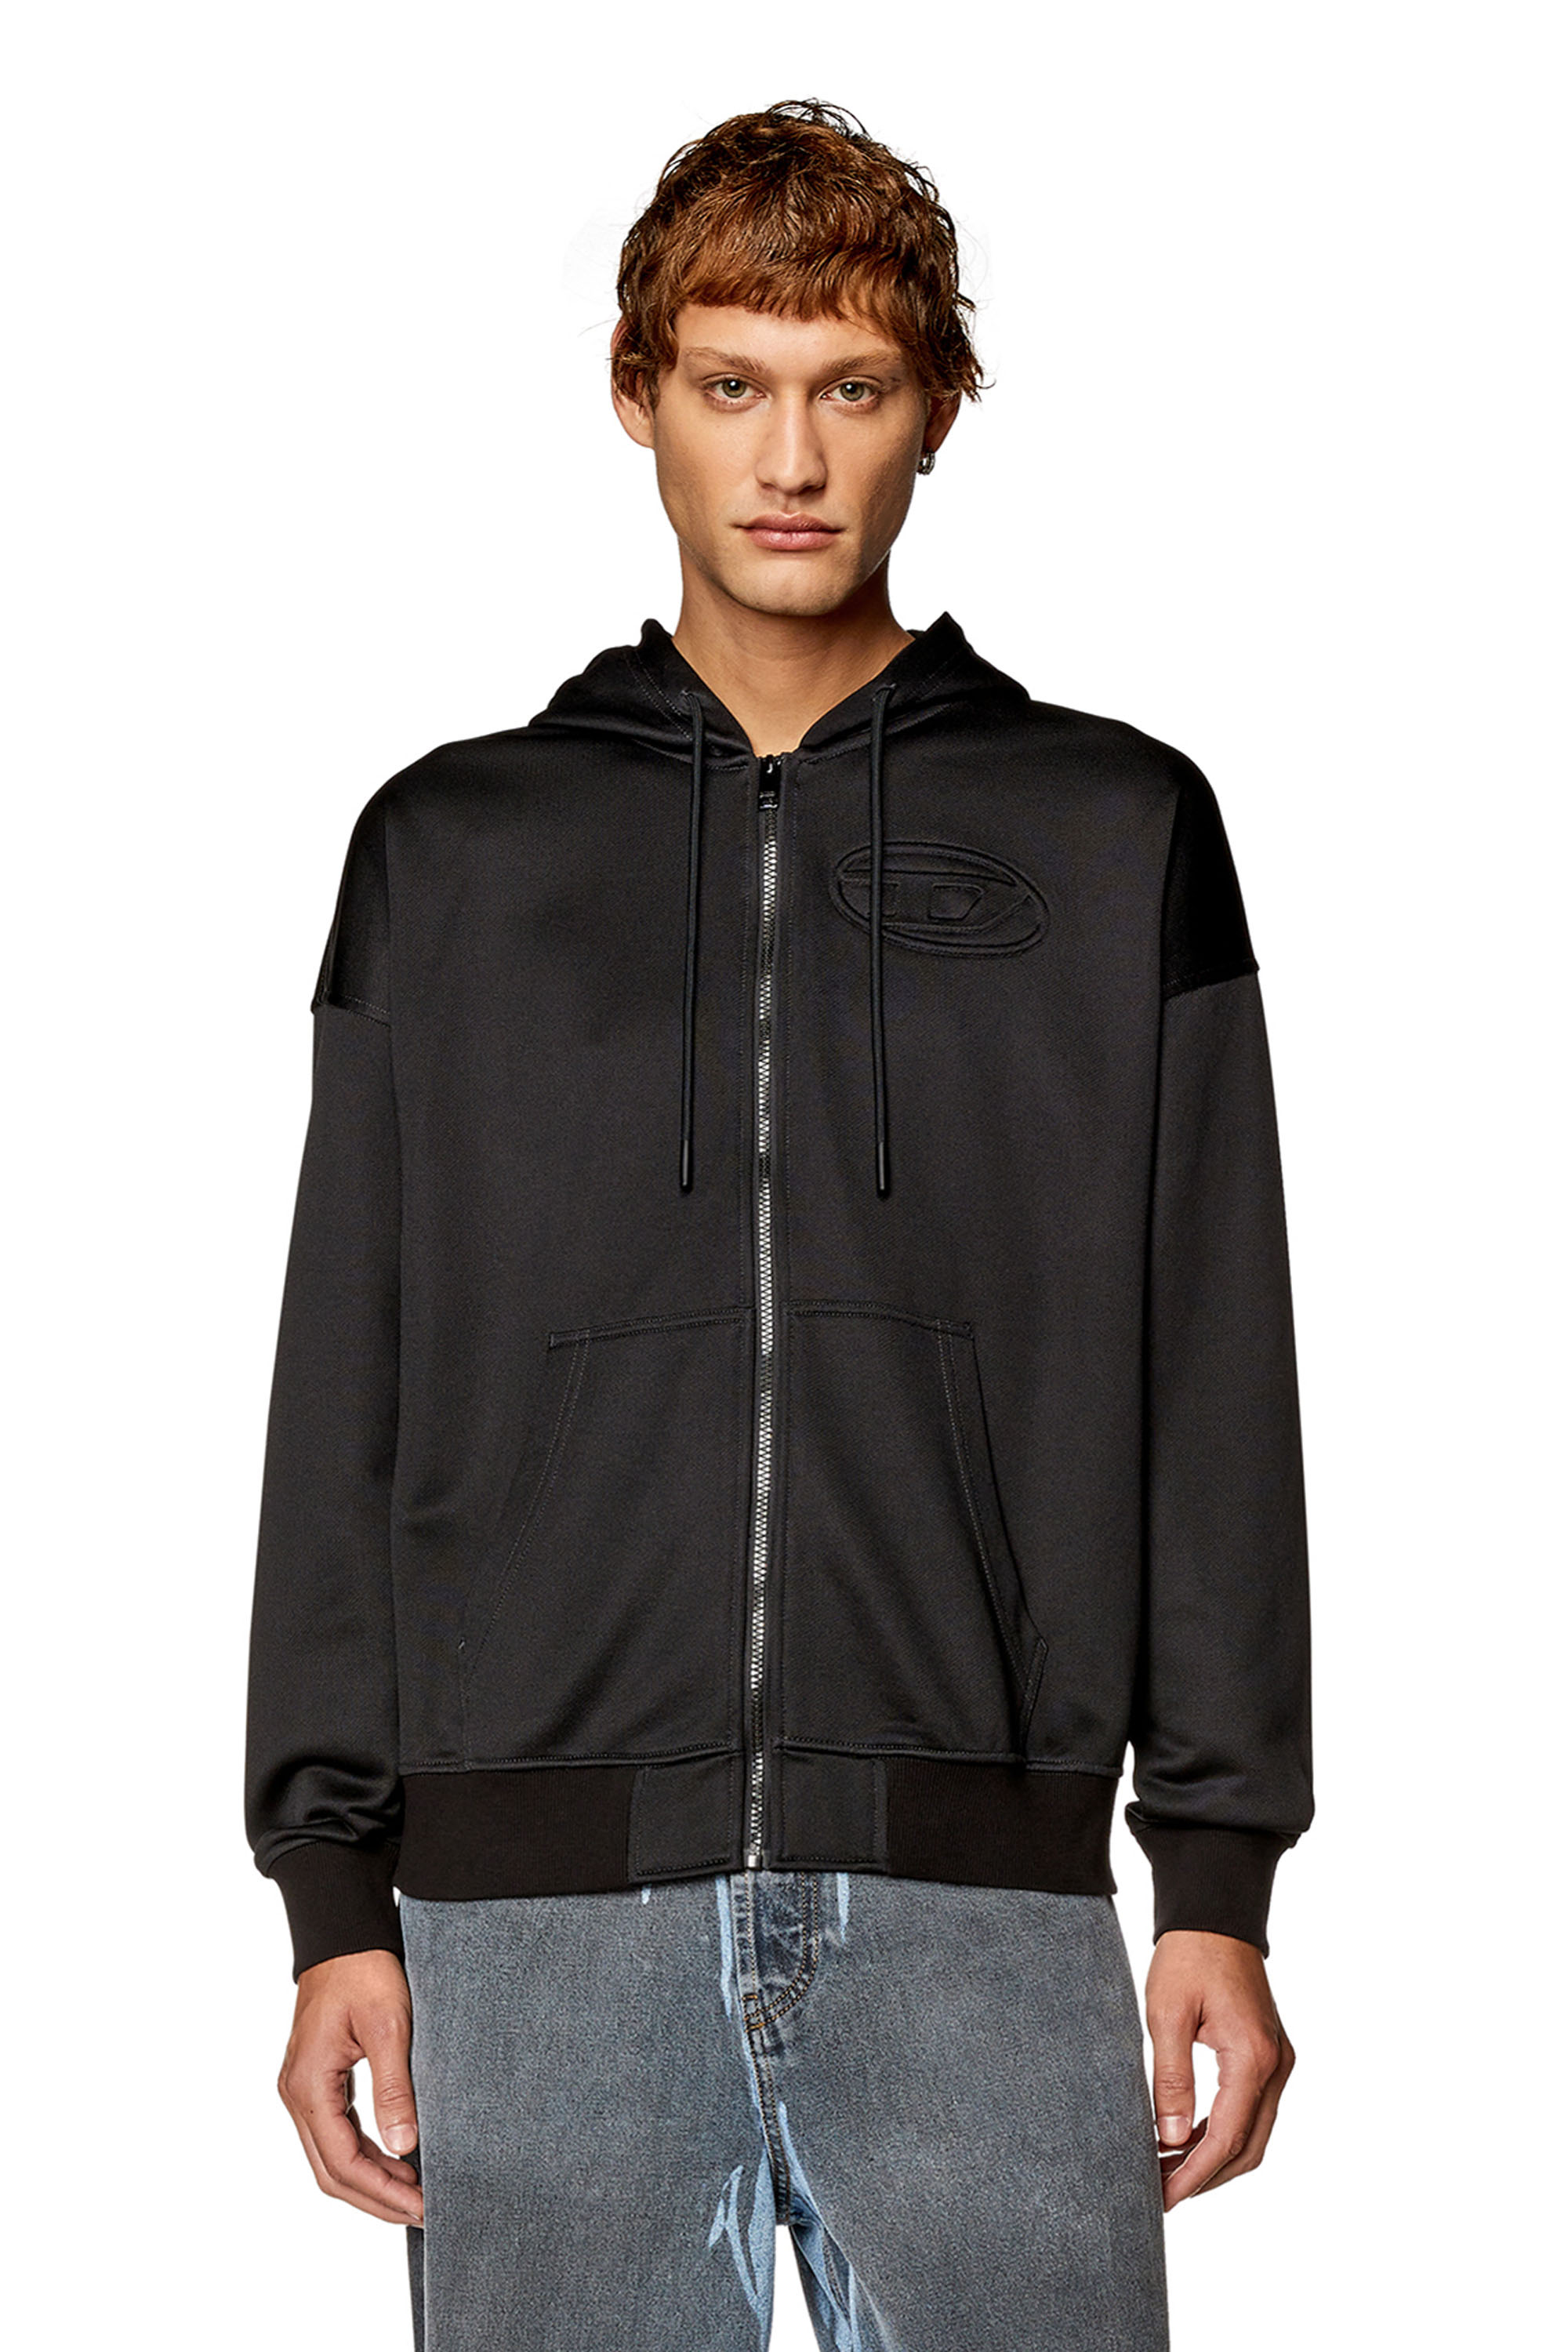 Diesel - Sweat-shirt à capuche zippé avec logo Oval D embossé - Pull Cotton - Homme - Noir